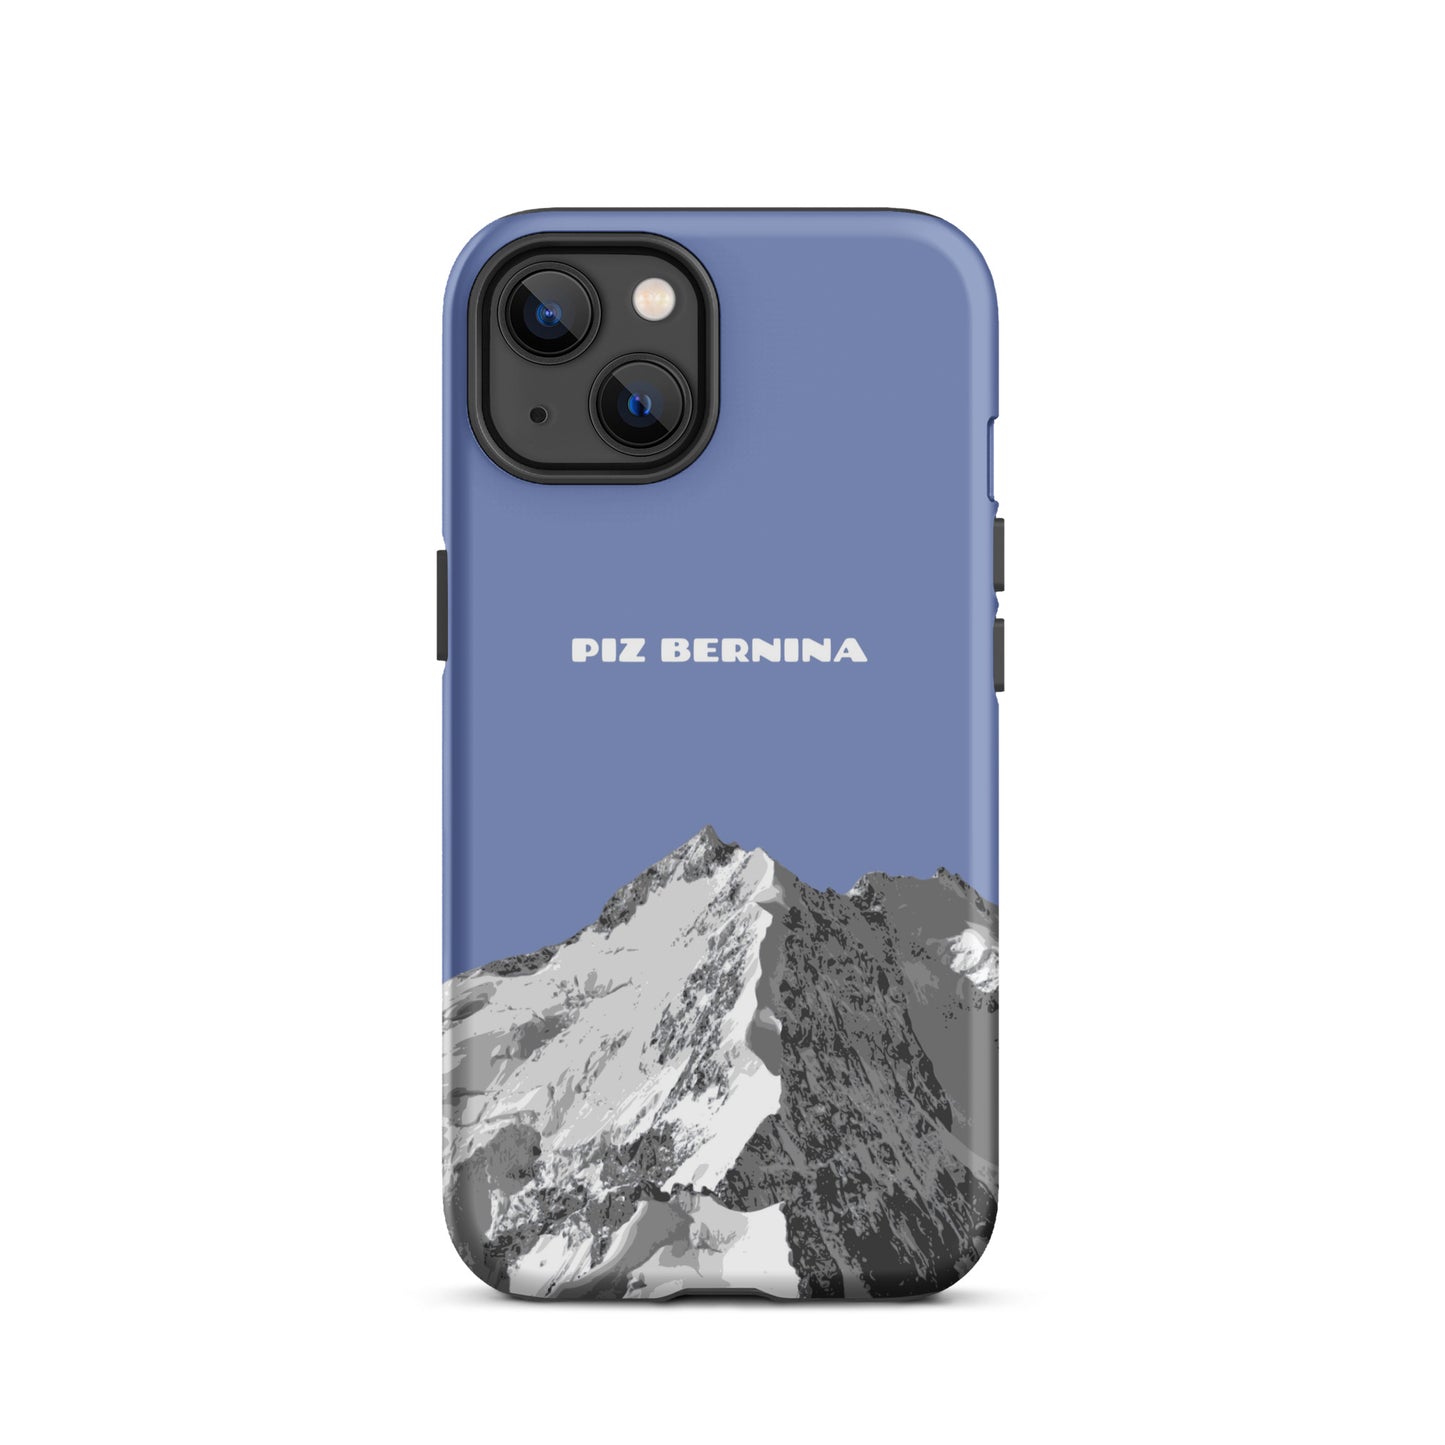 Hülle für das iPhone 13 von Apple in der Farbe Pastellblau, dass den Piz Bernina in Graubünden zeigt.